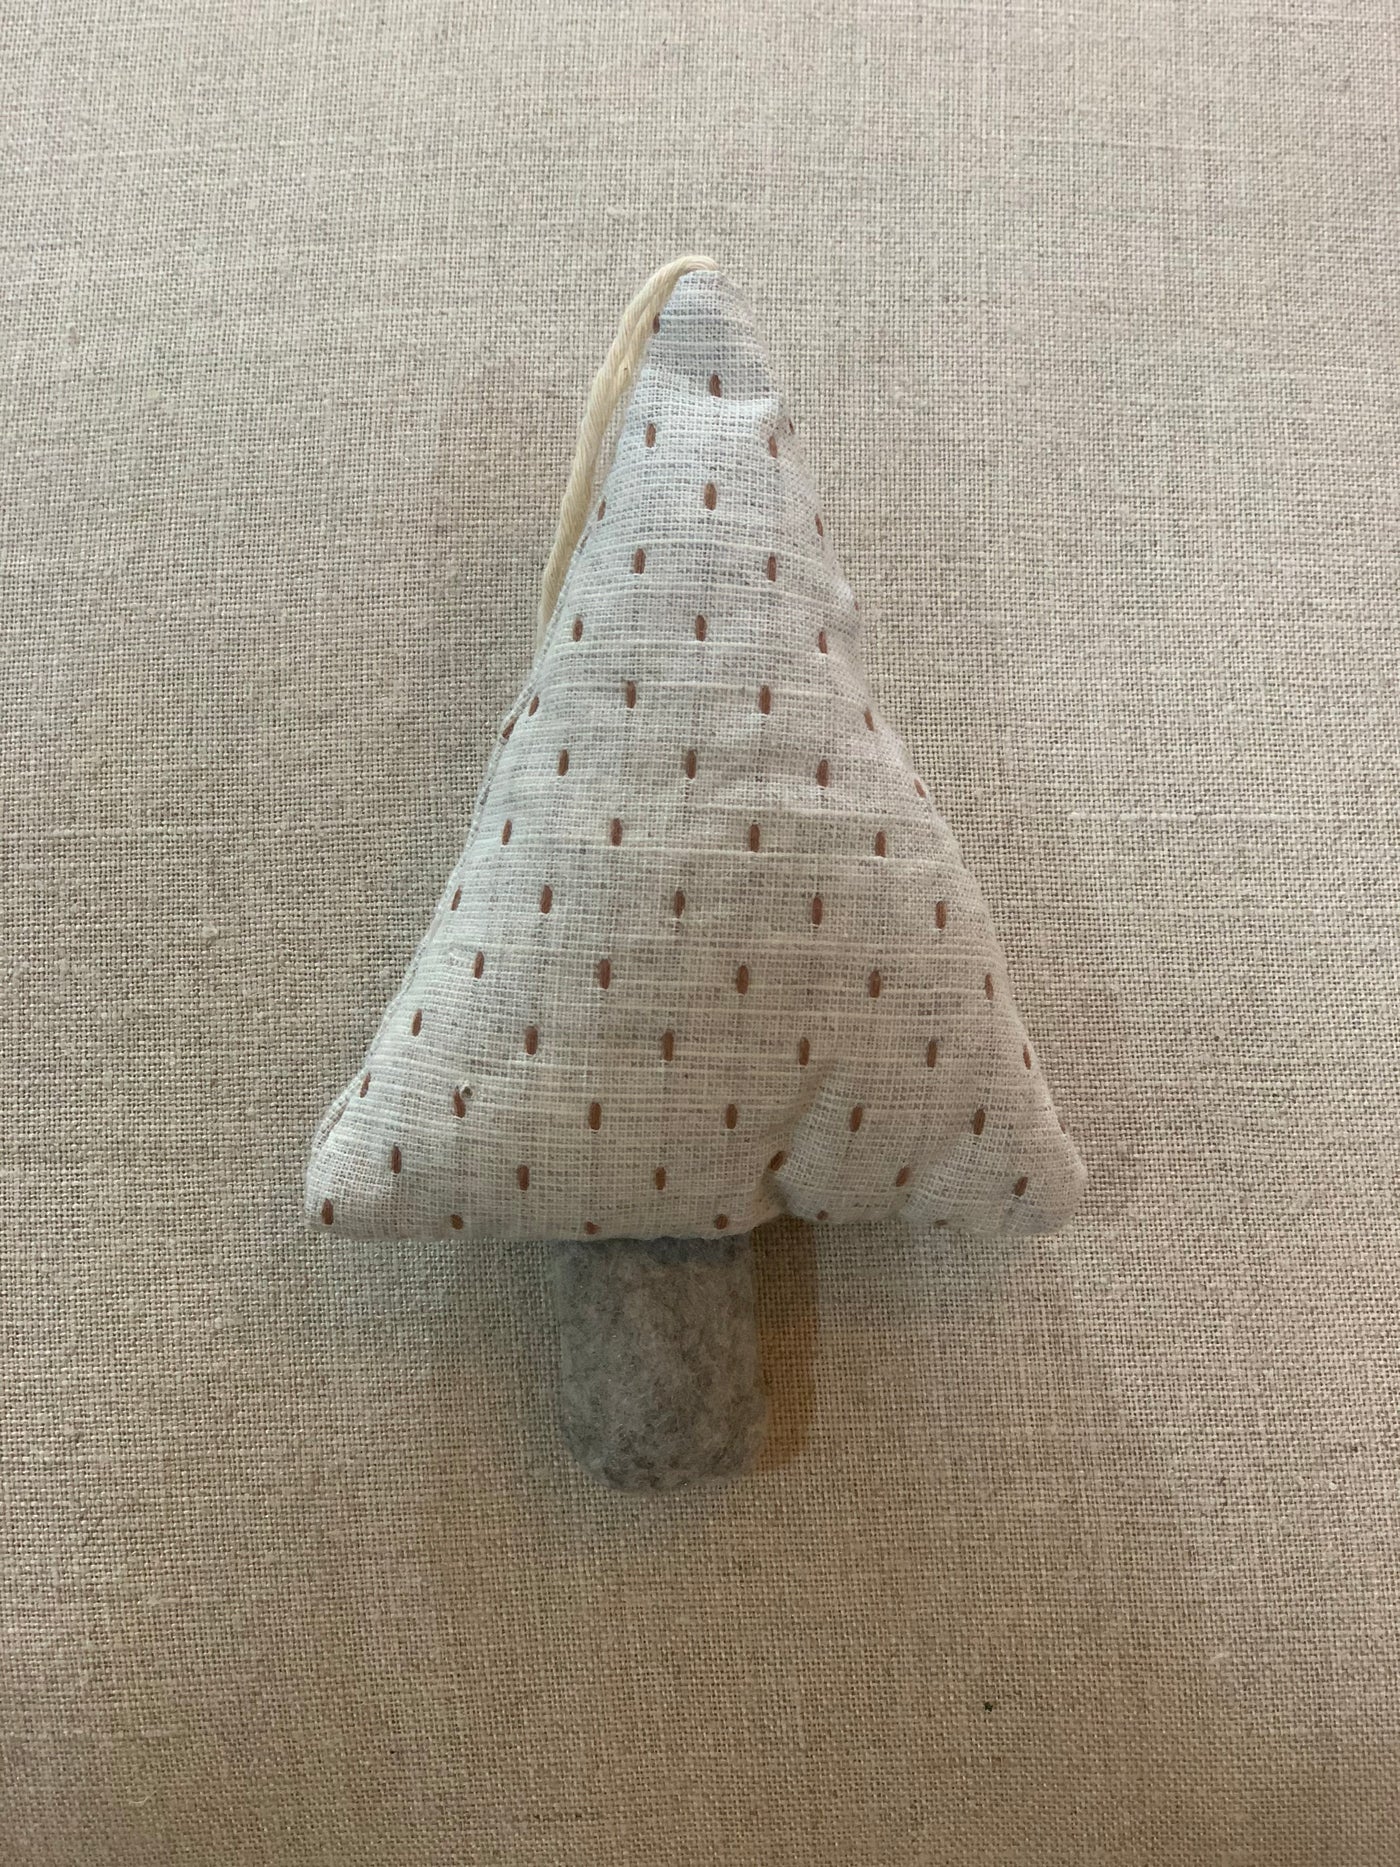 Patterned Tree Ornament - Little Prairie Girl